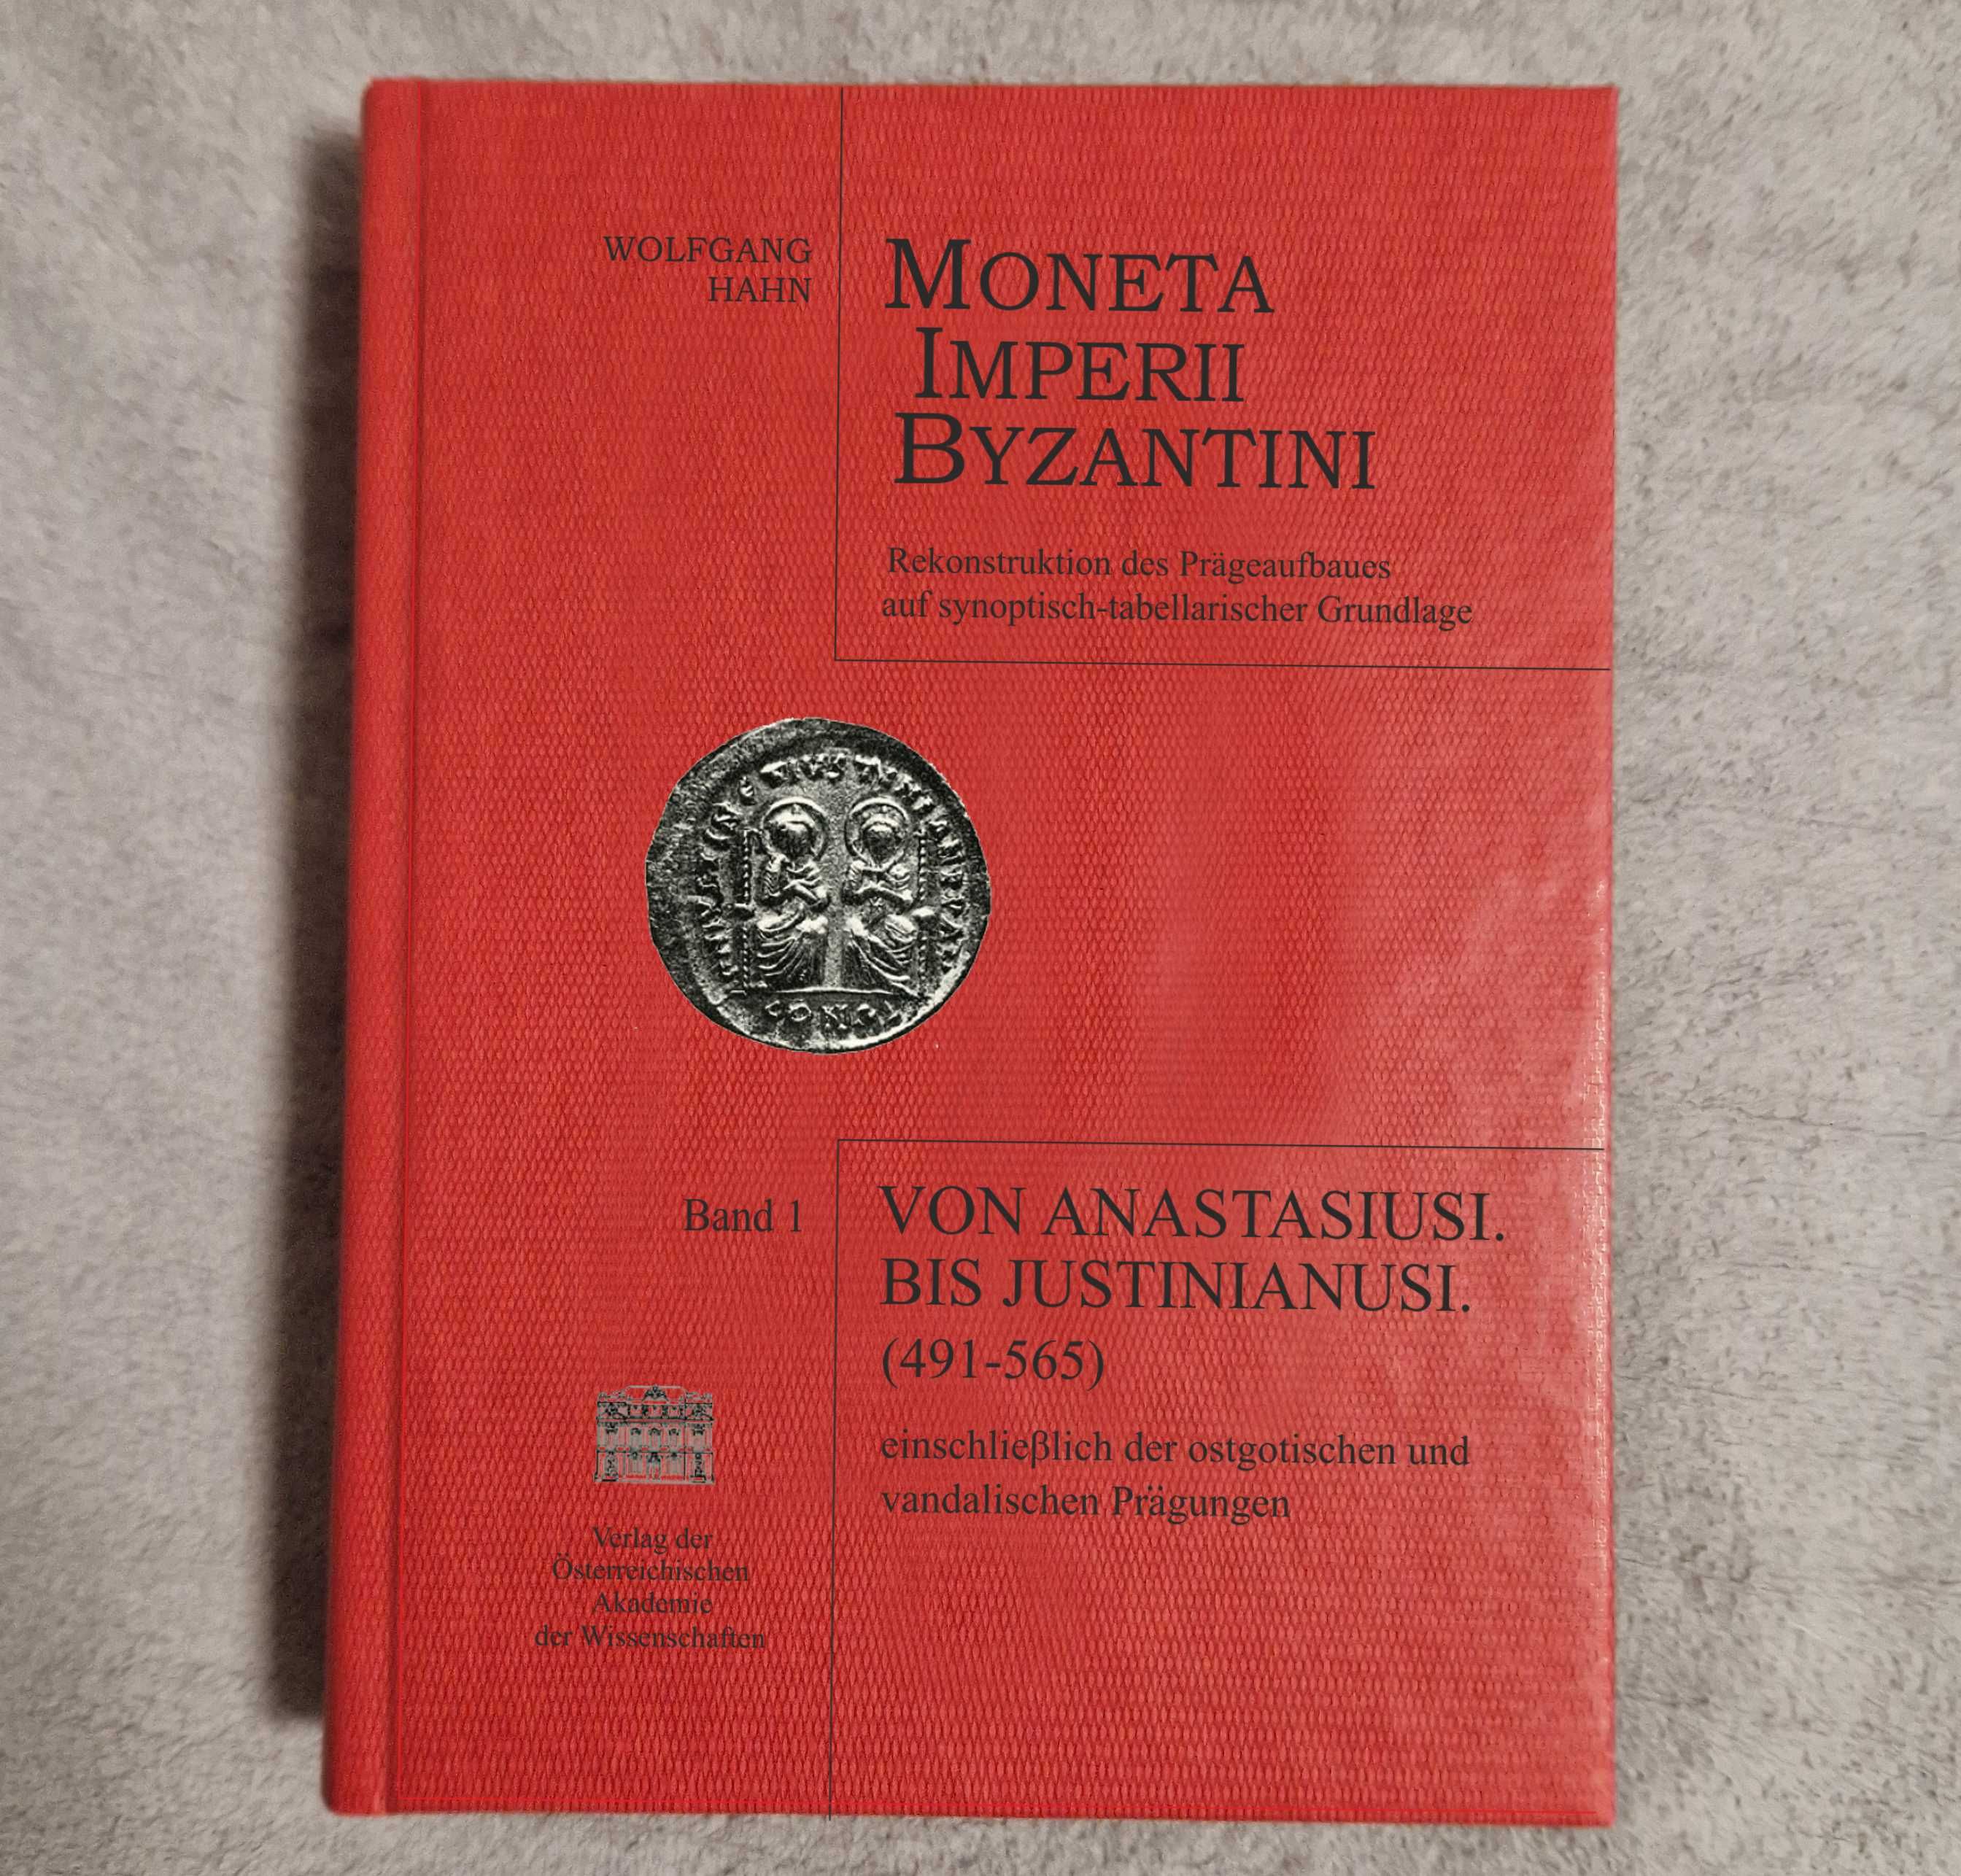 Moneta Imperii Byzantini - Wolfgang Hahn - Band 1